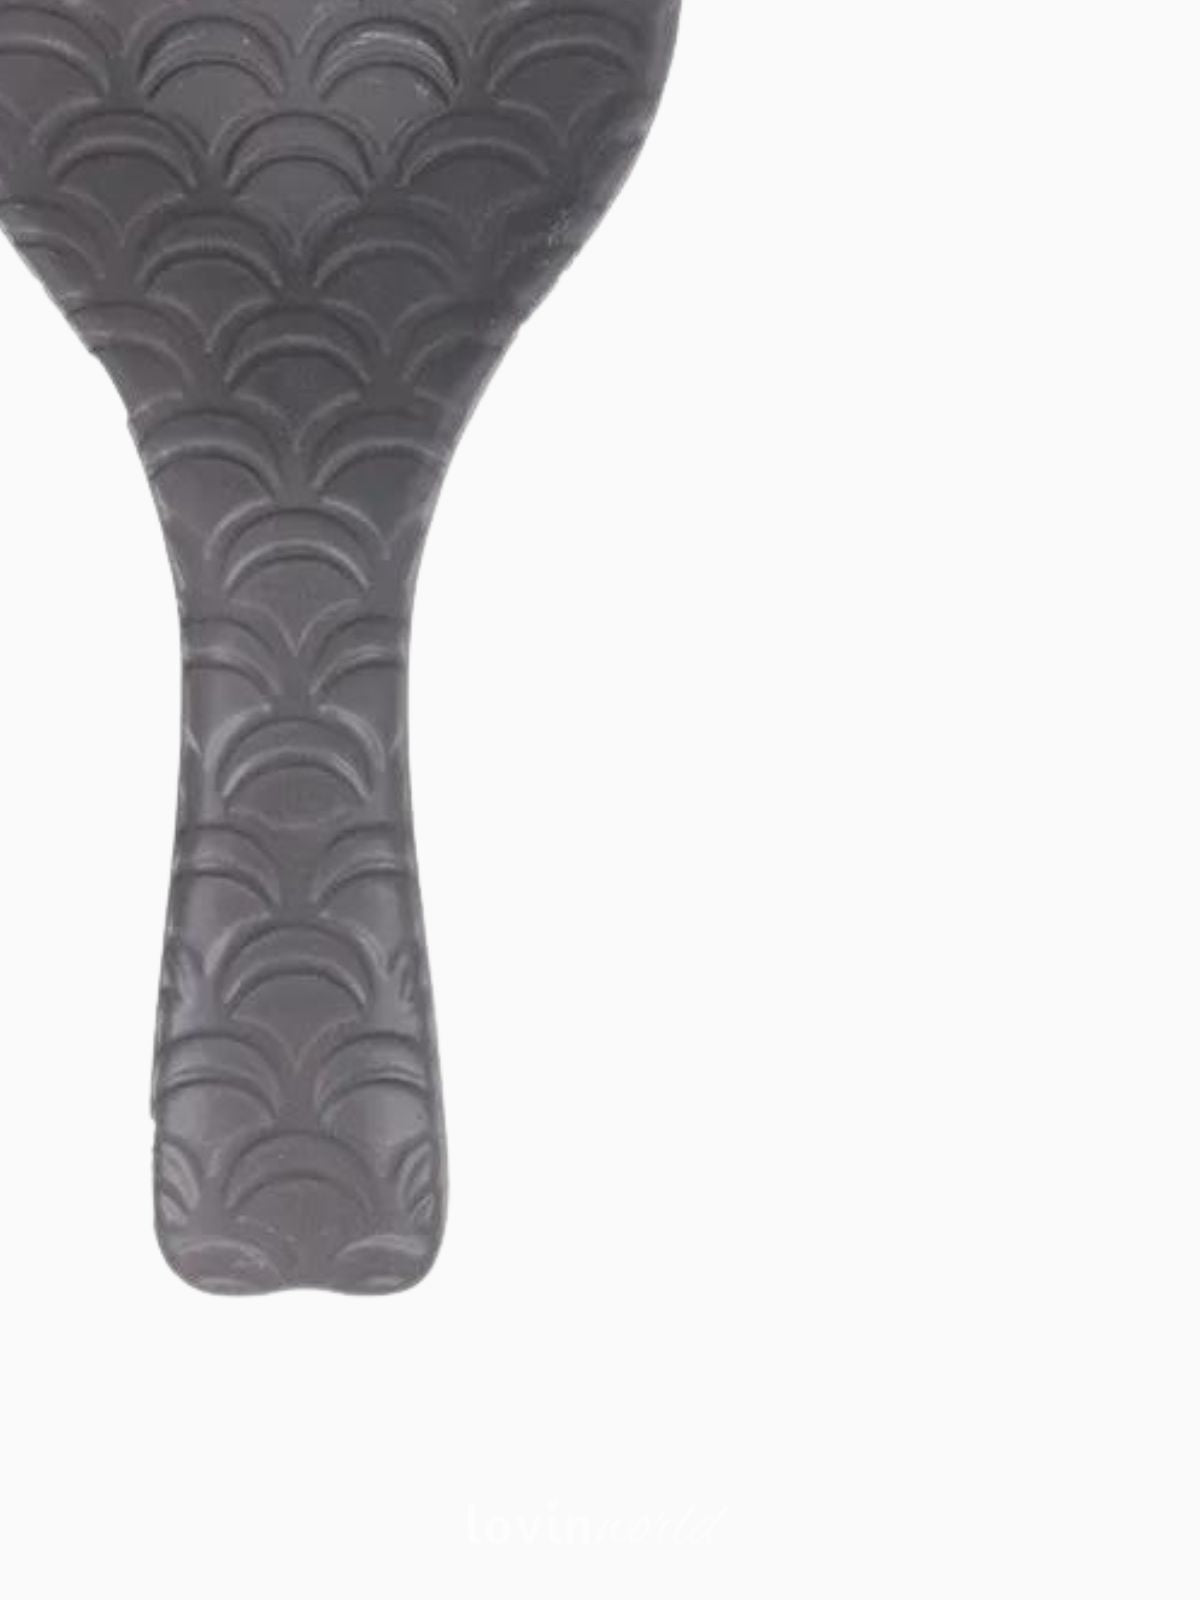 Poggiamestolo in ceramica Shapes, in colore grigio chiaro-3